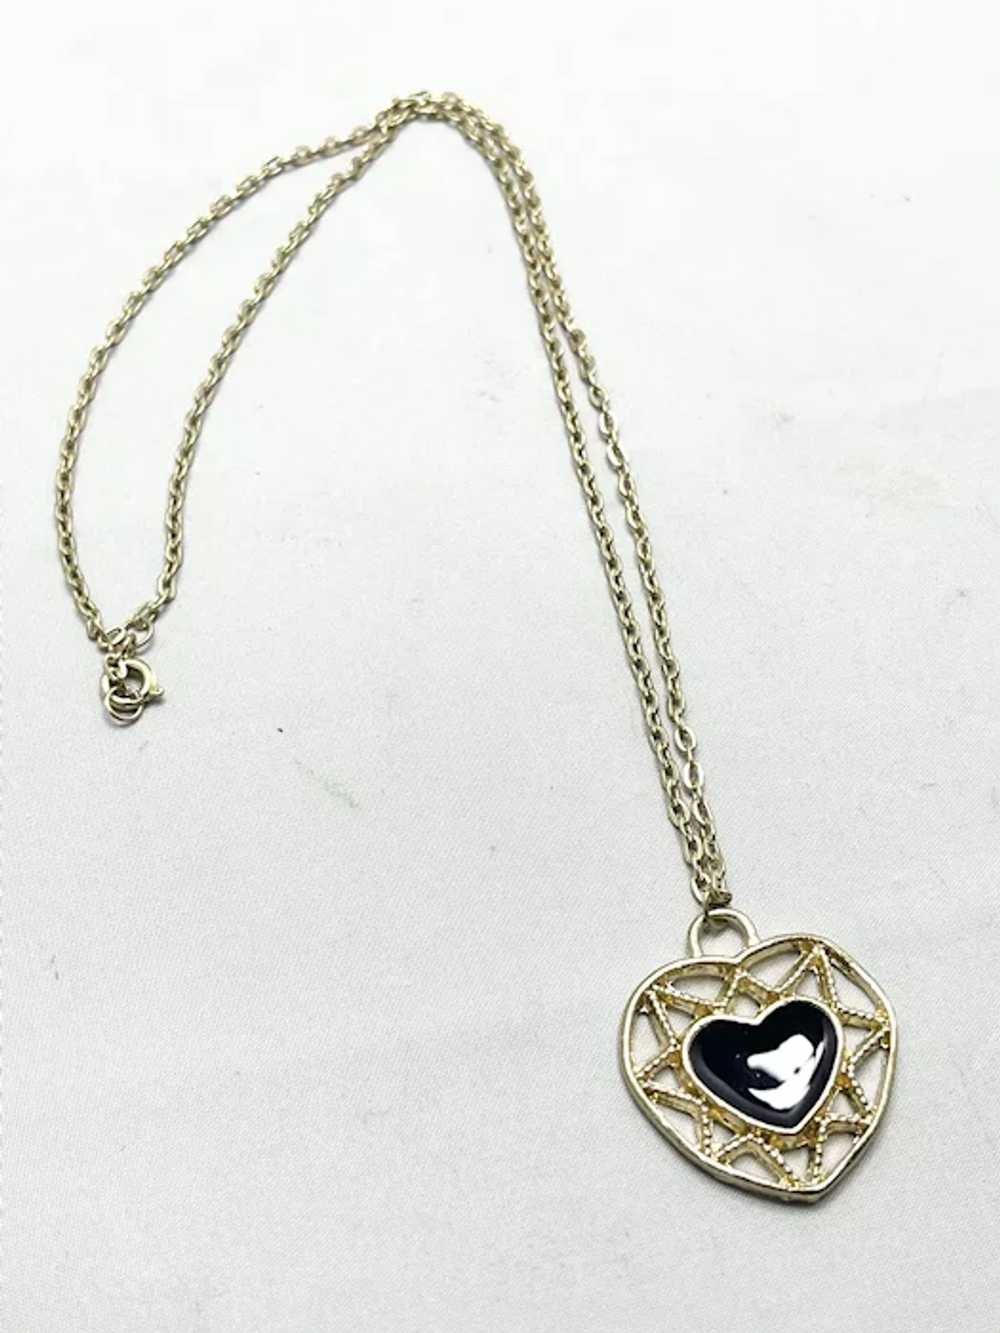 Vintage Black Enamel Heart Necklace - image 4